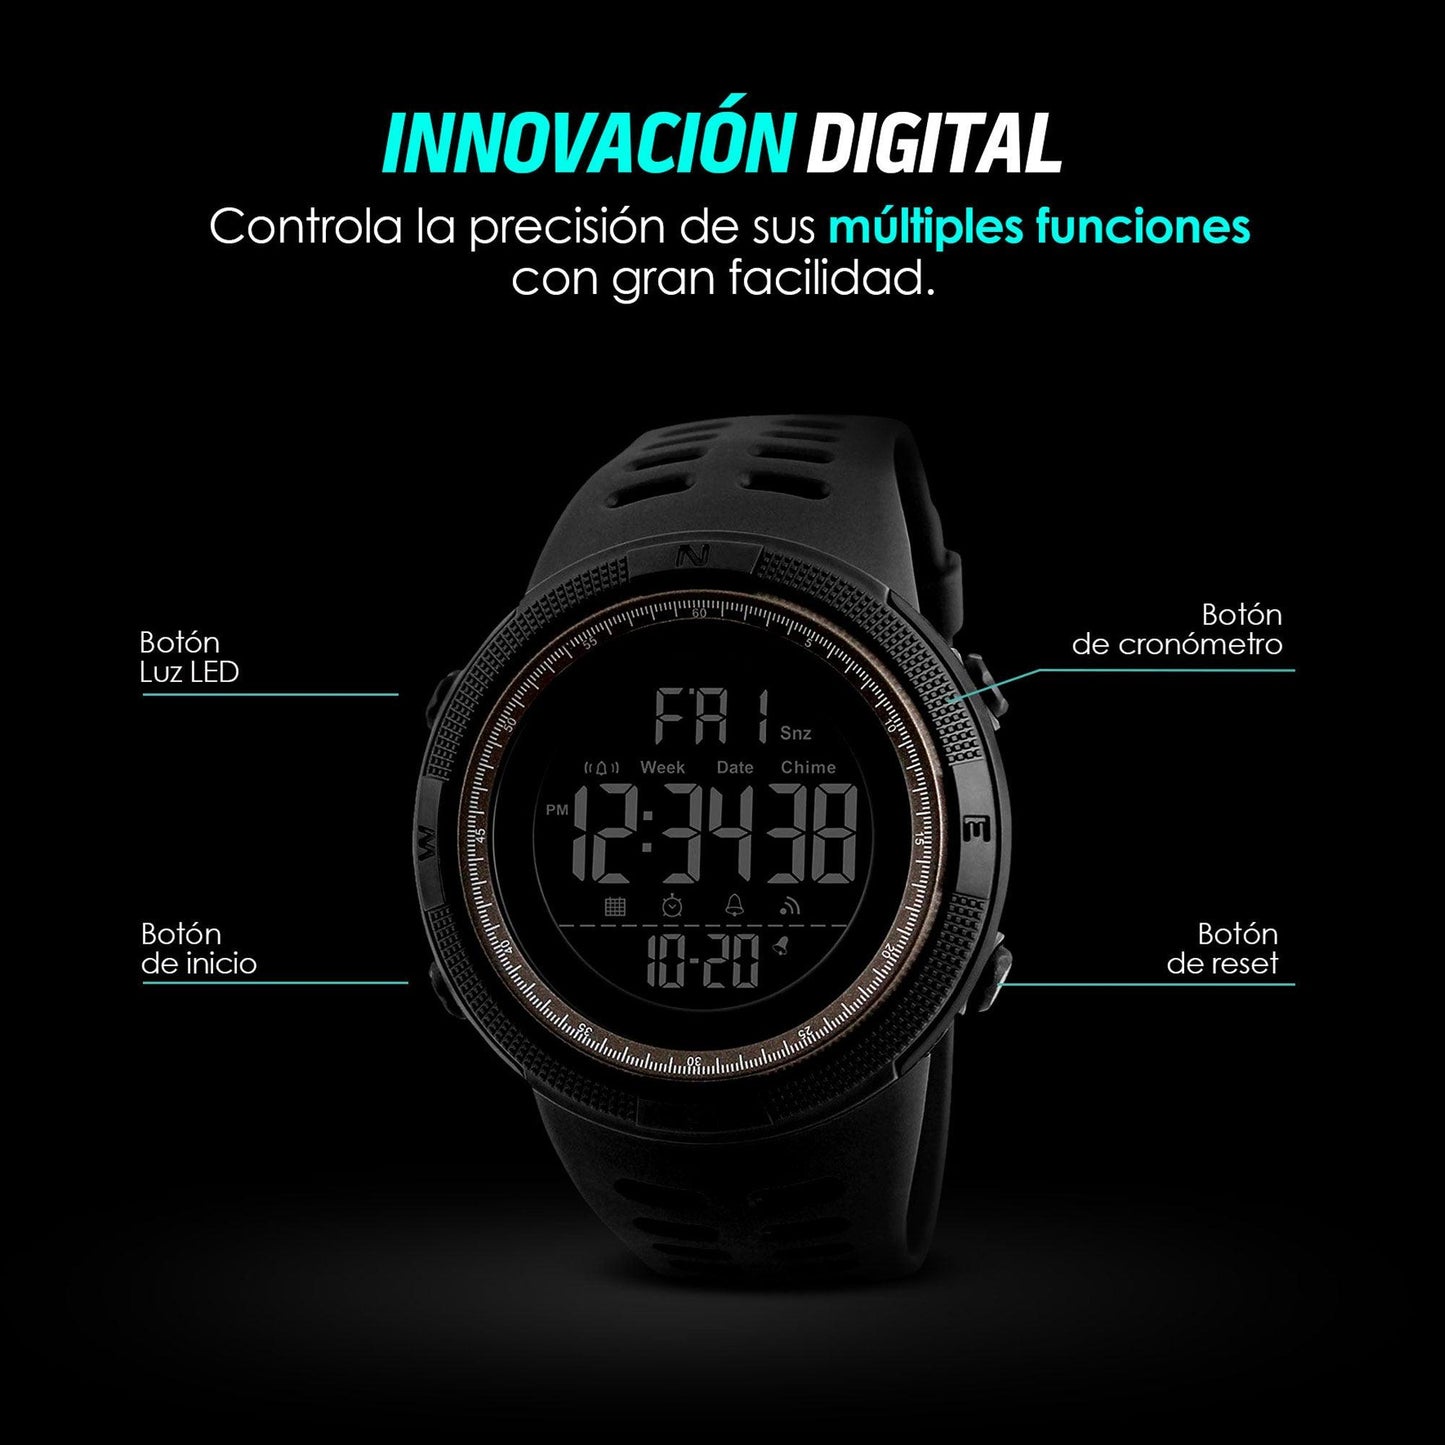 Reloj Deportivo Resistente Agua Digital, Alarma, Cronómetro 1251